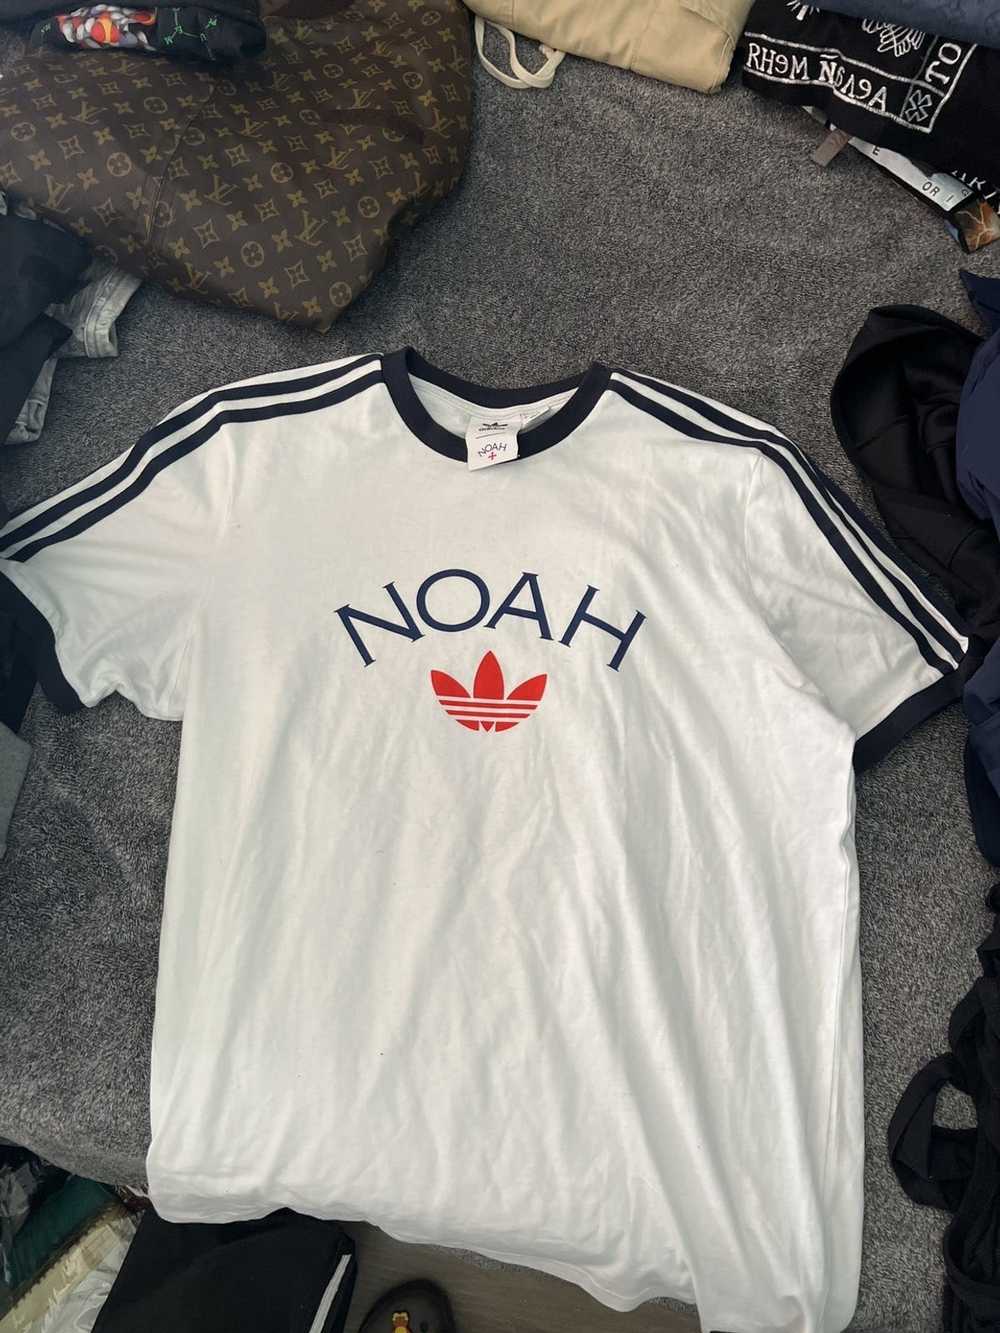 Adidas × Noah Noah x adidas t shirt - image 3